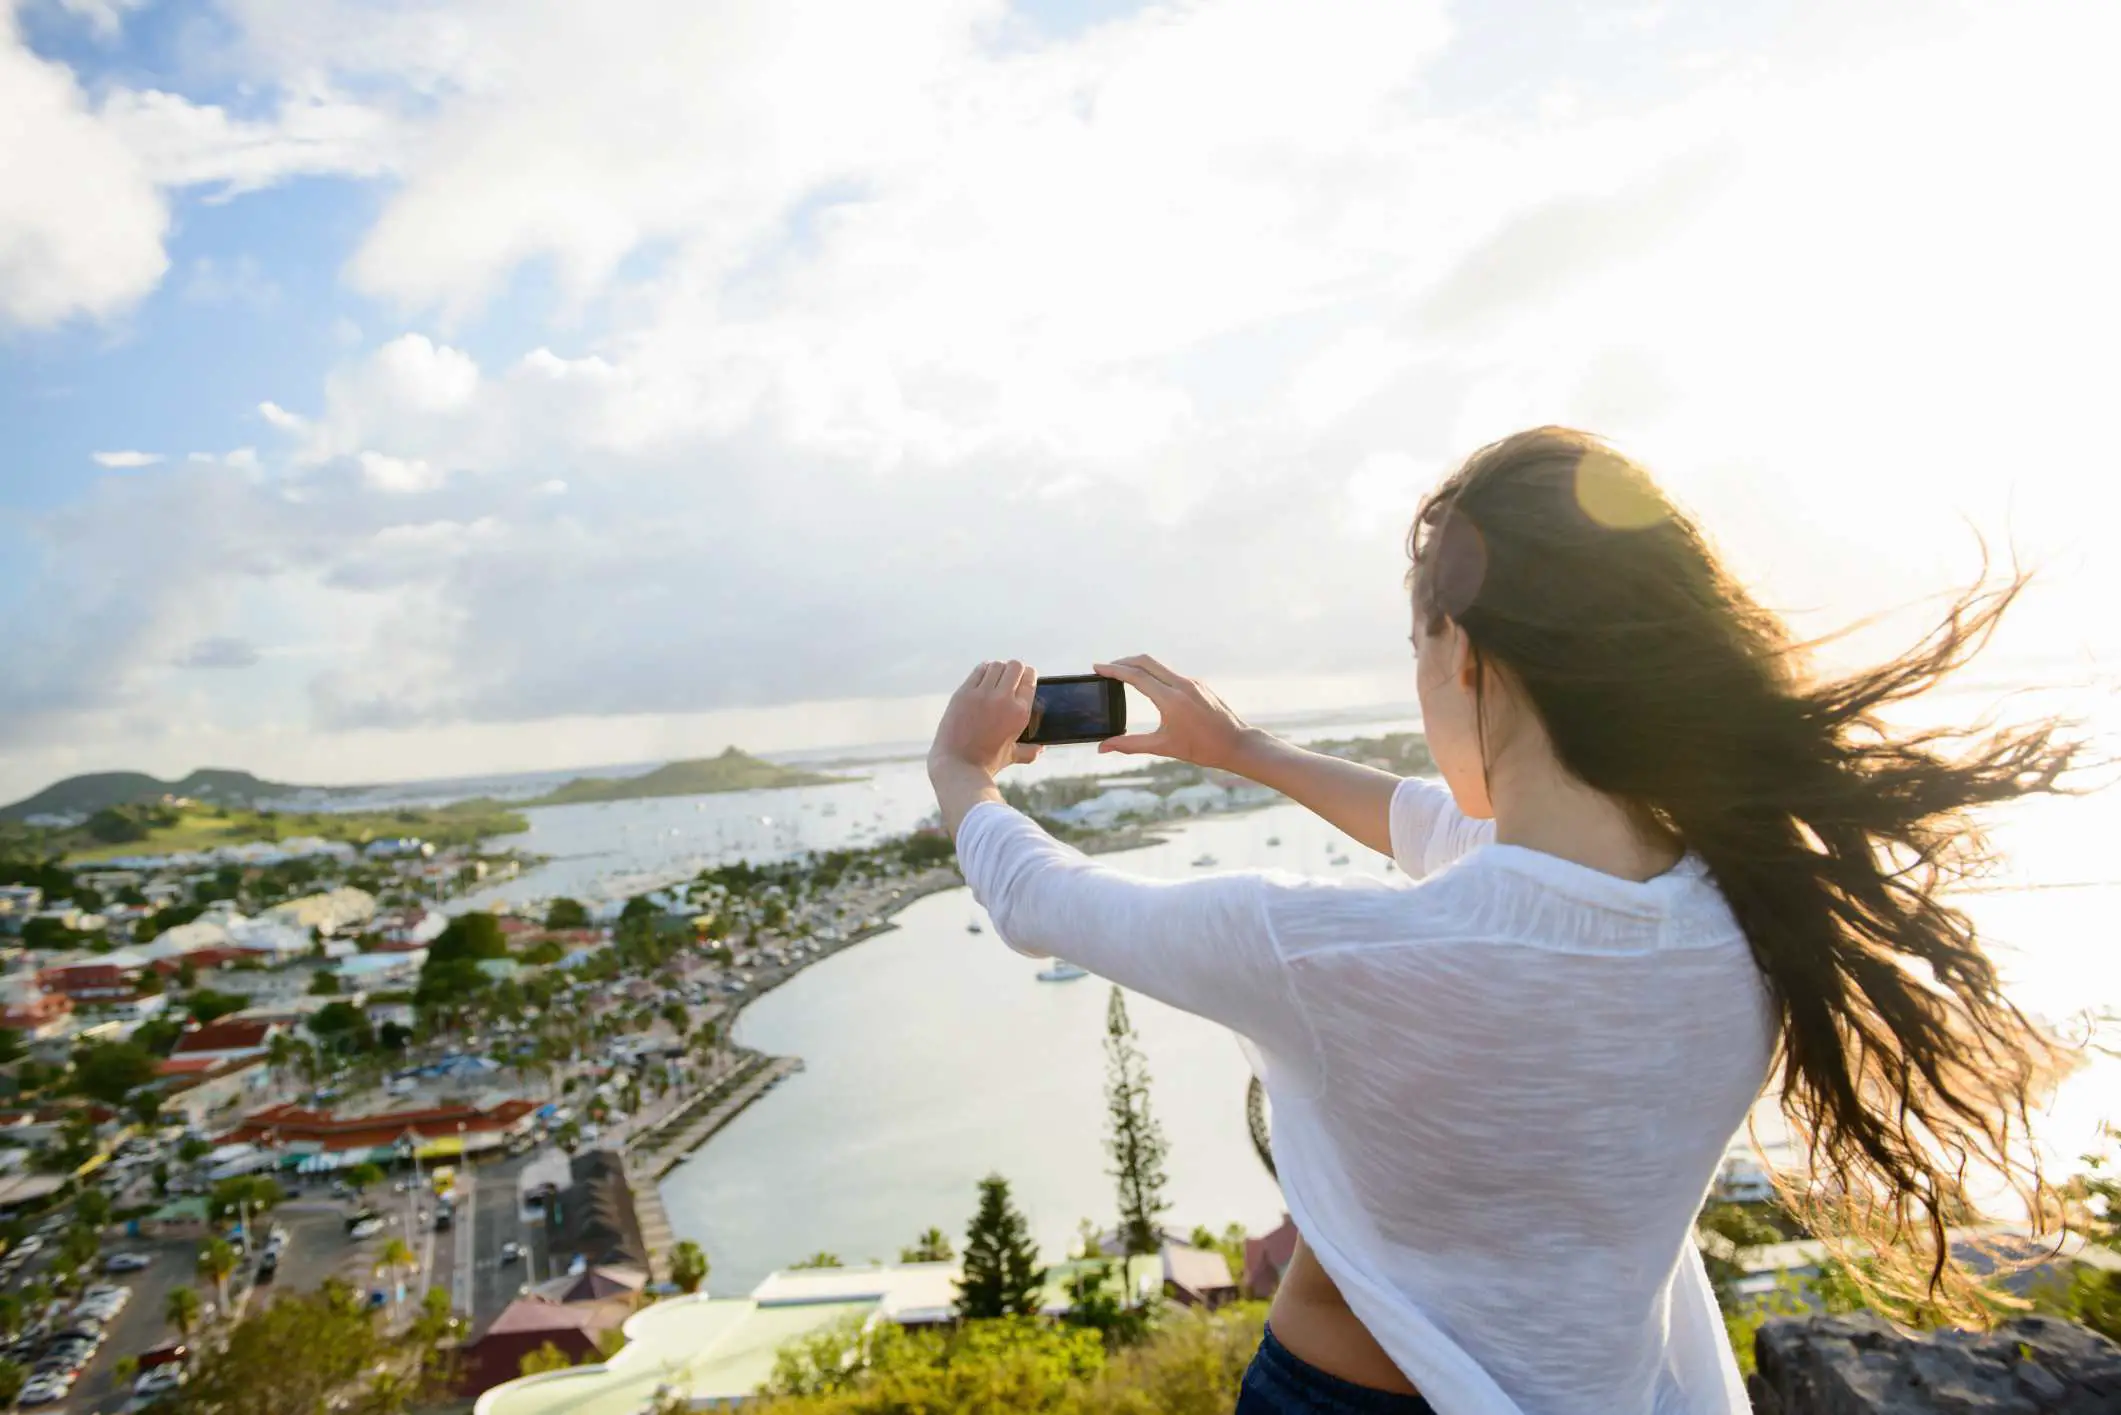 Pessoa tirando uma selfie no topo de uma colina perto de uma baía